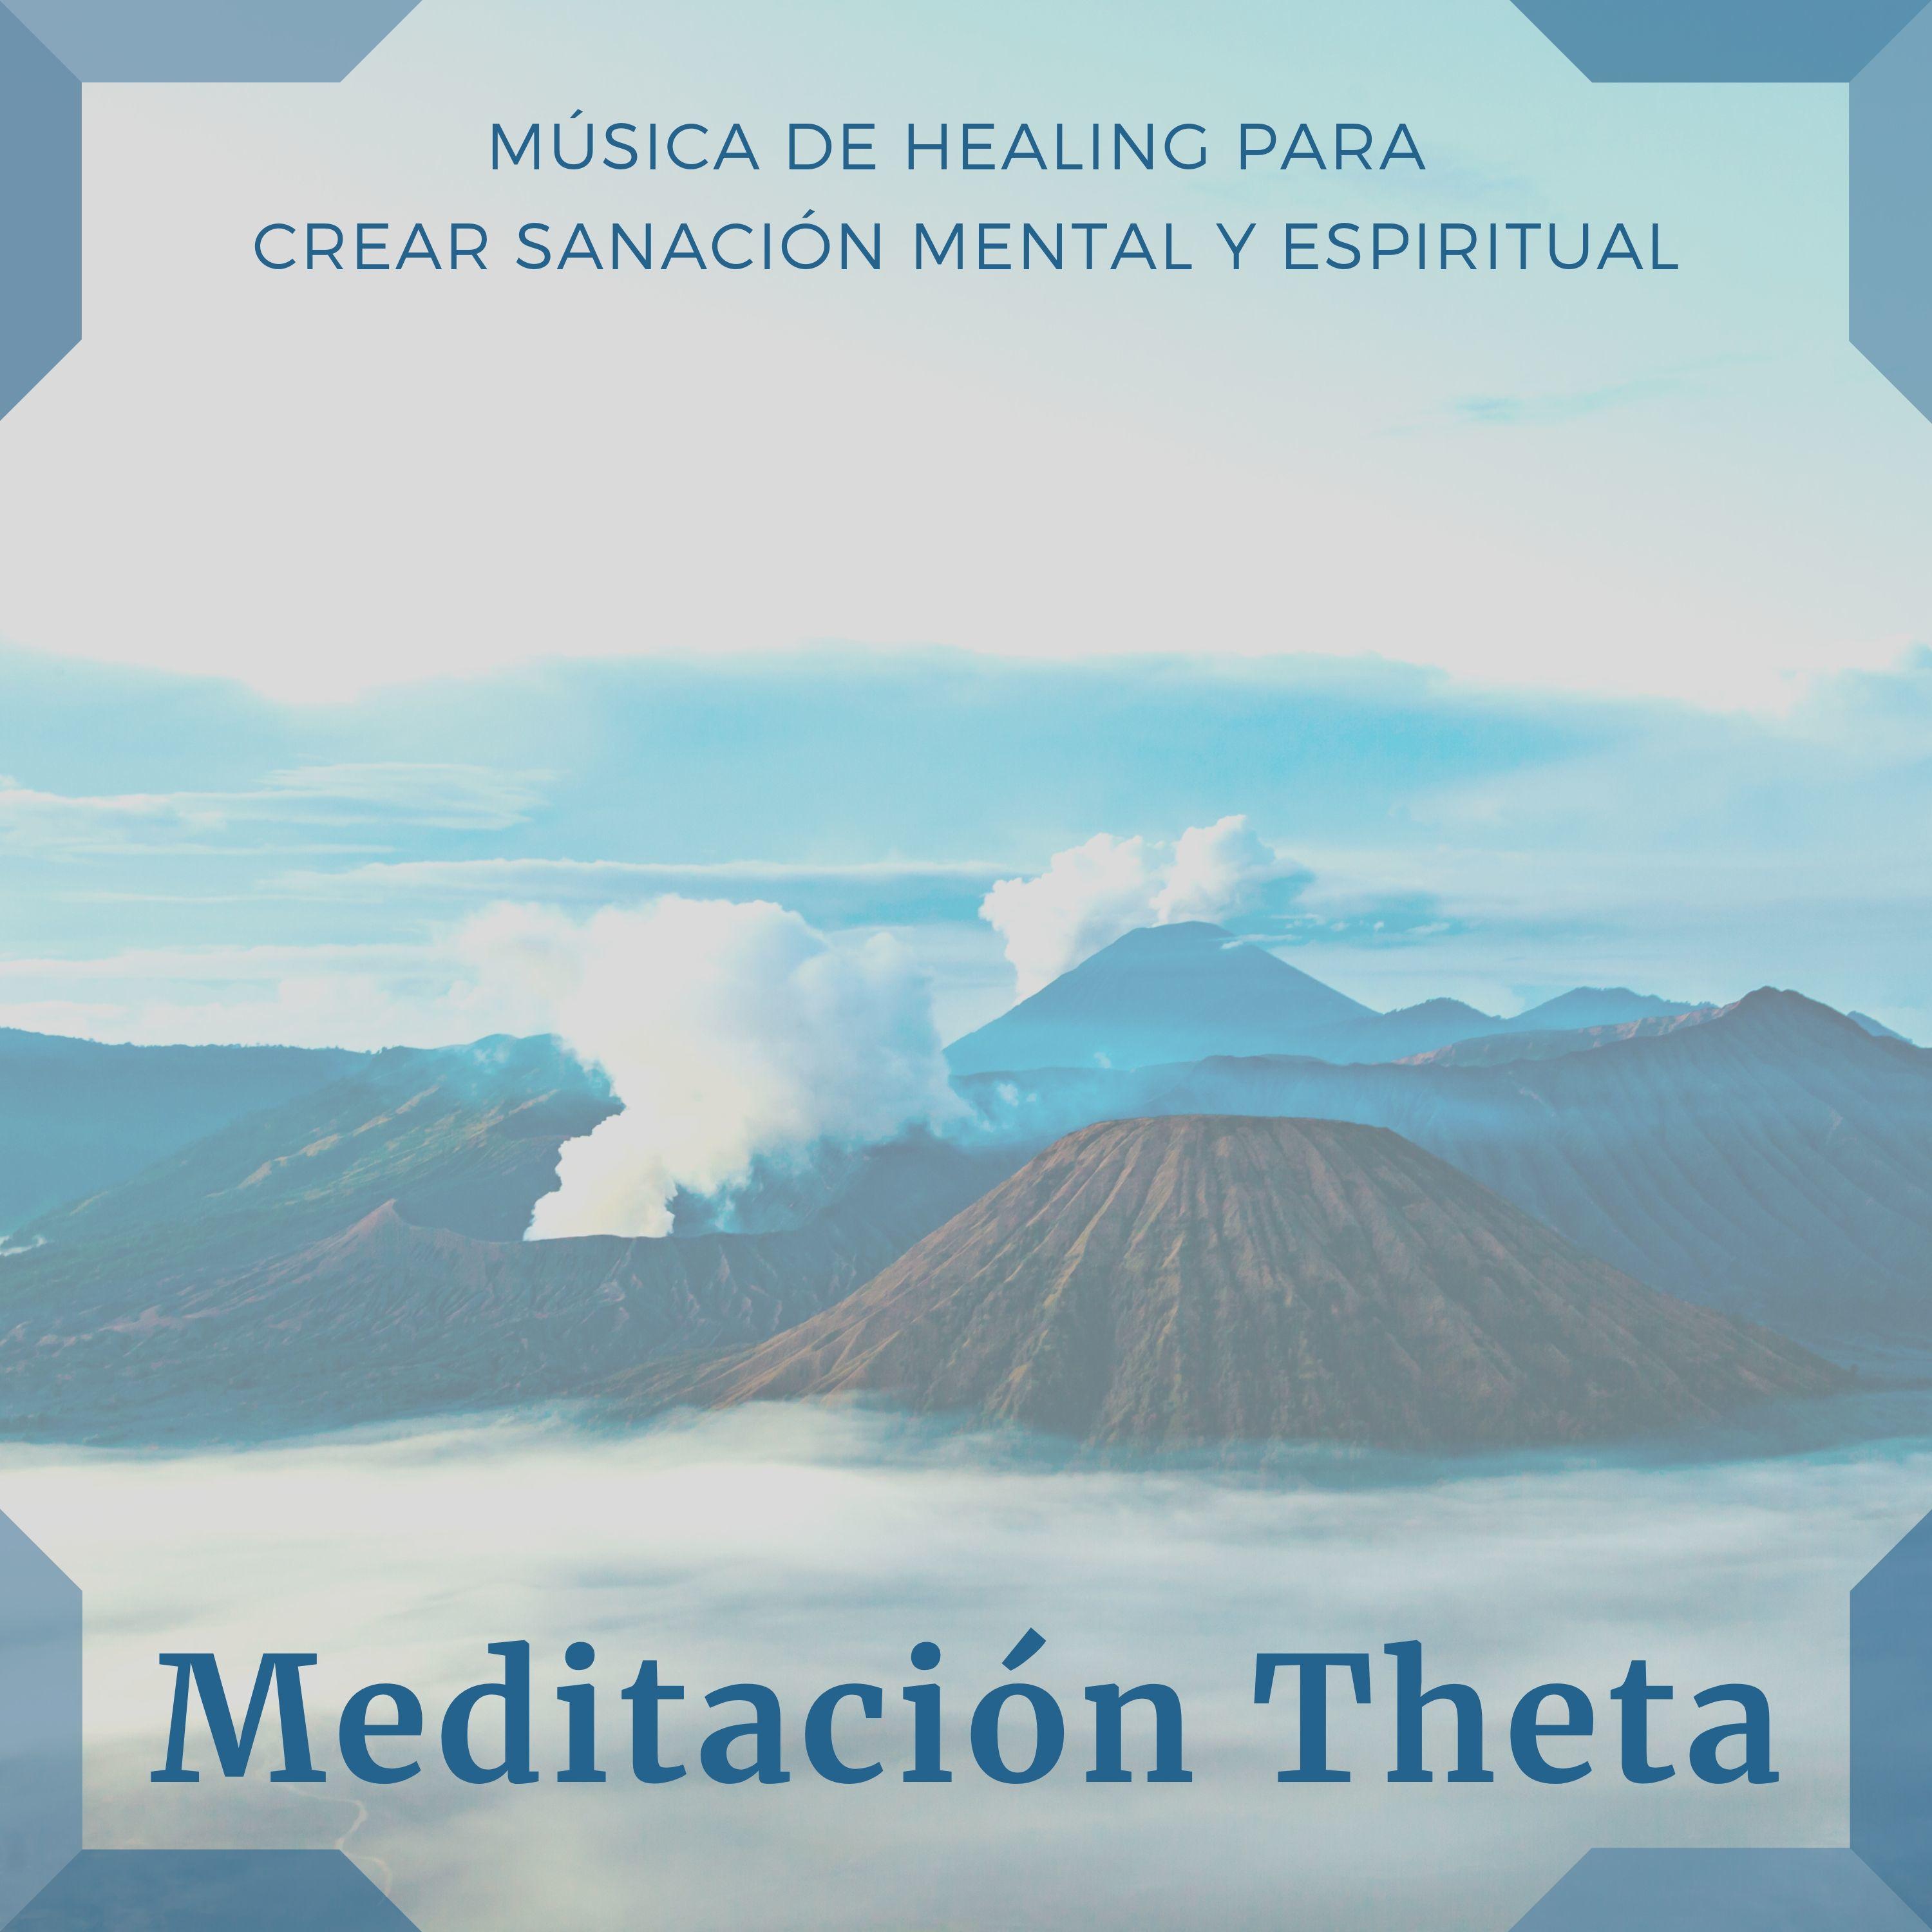 Meditación Theta - Música de Healing para Crear Sanación Mental y Espiritual